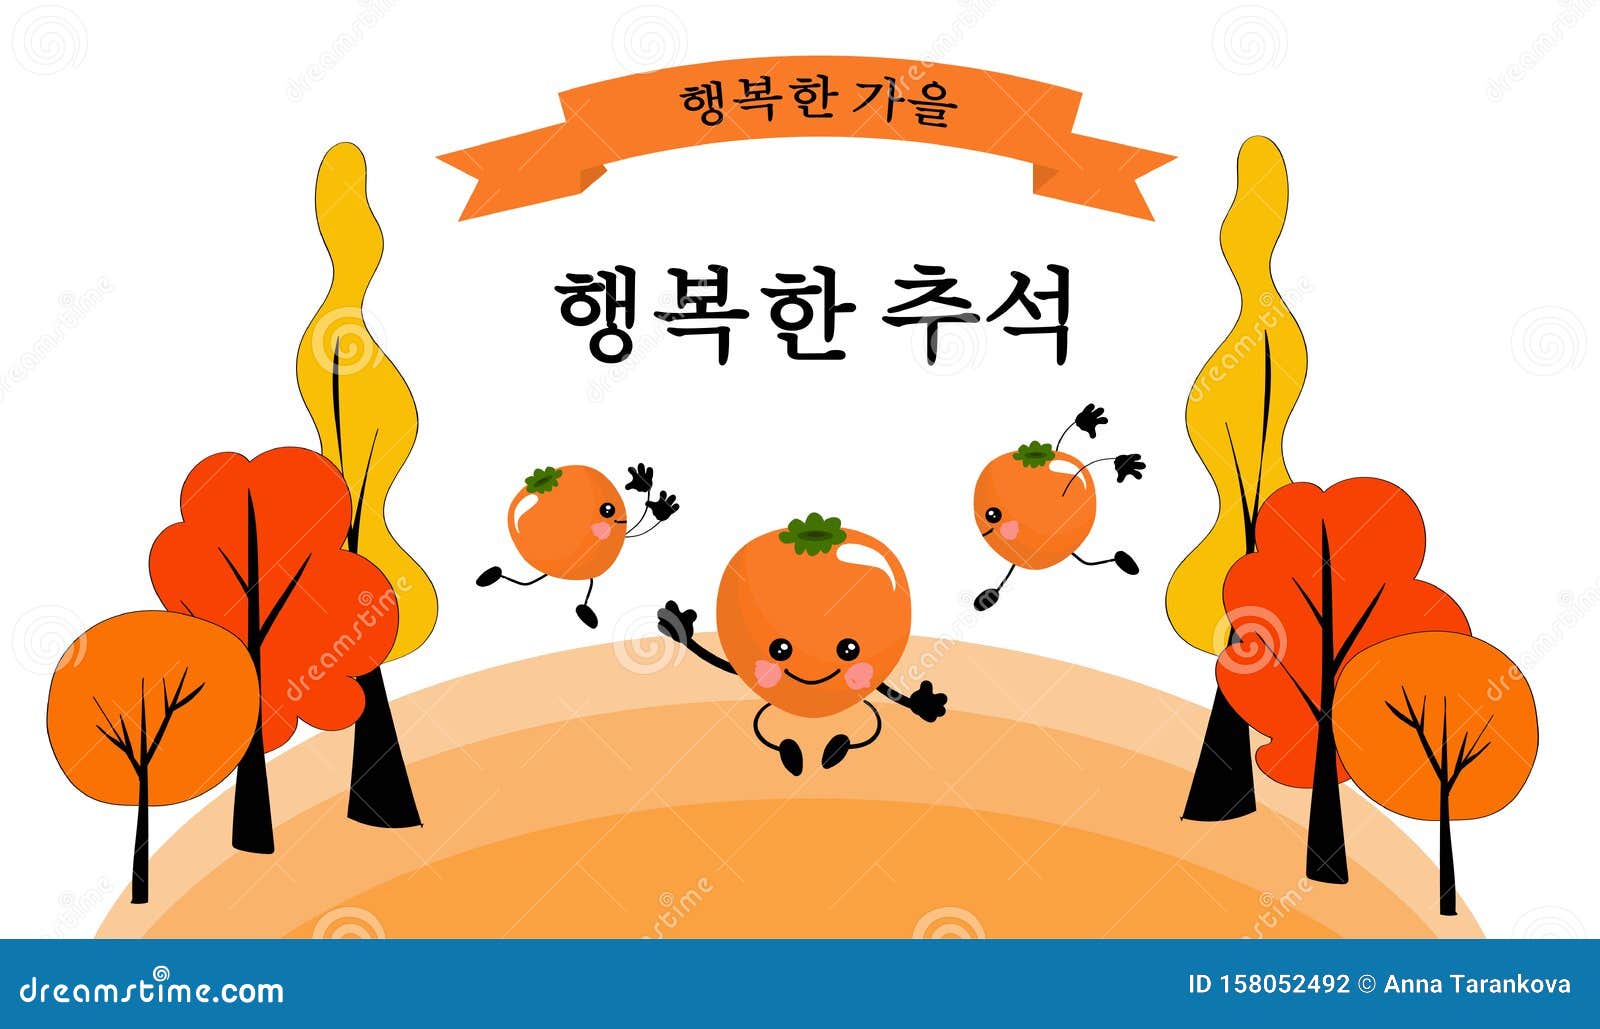 Chuseok is the korean harvest moon. Открытки с корейским днем урожая Чхусок. Чусок праздник урожая. Чусок корейский праздник картинки. Осенний фестиваль в Корее.